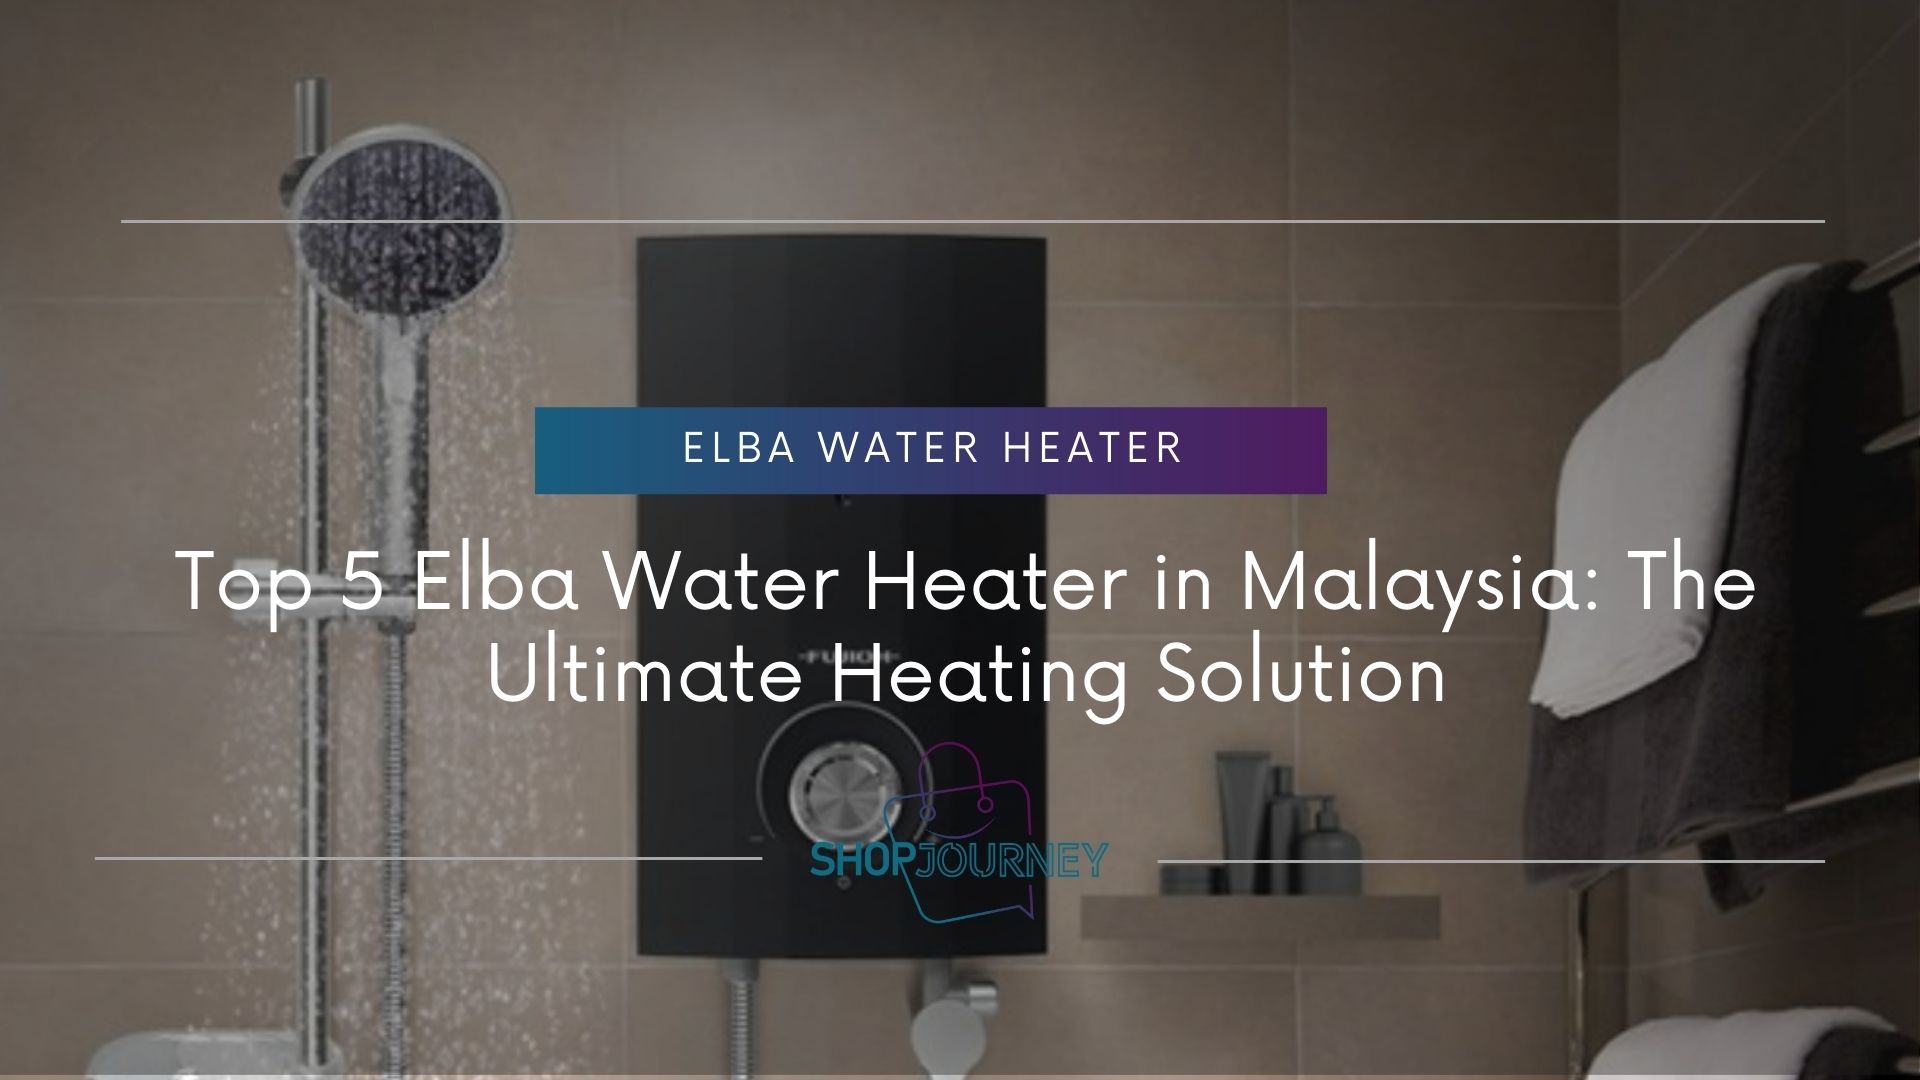 Elba water heater - shop journey